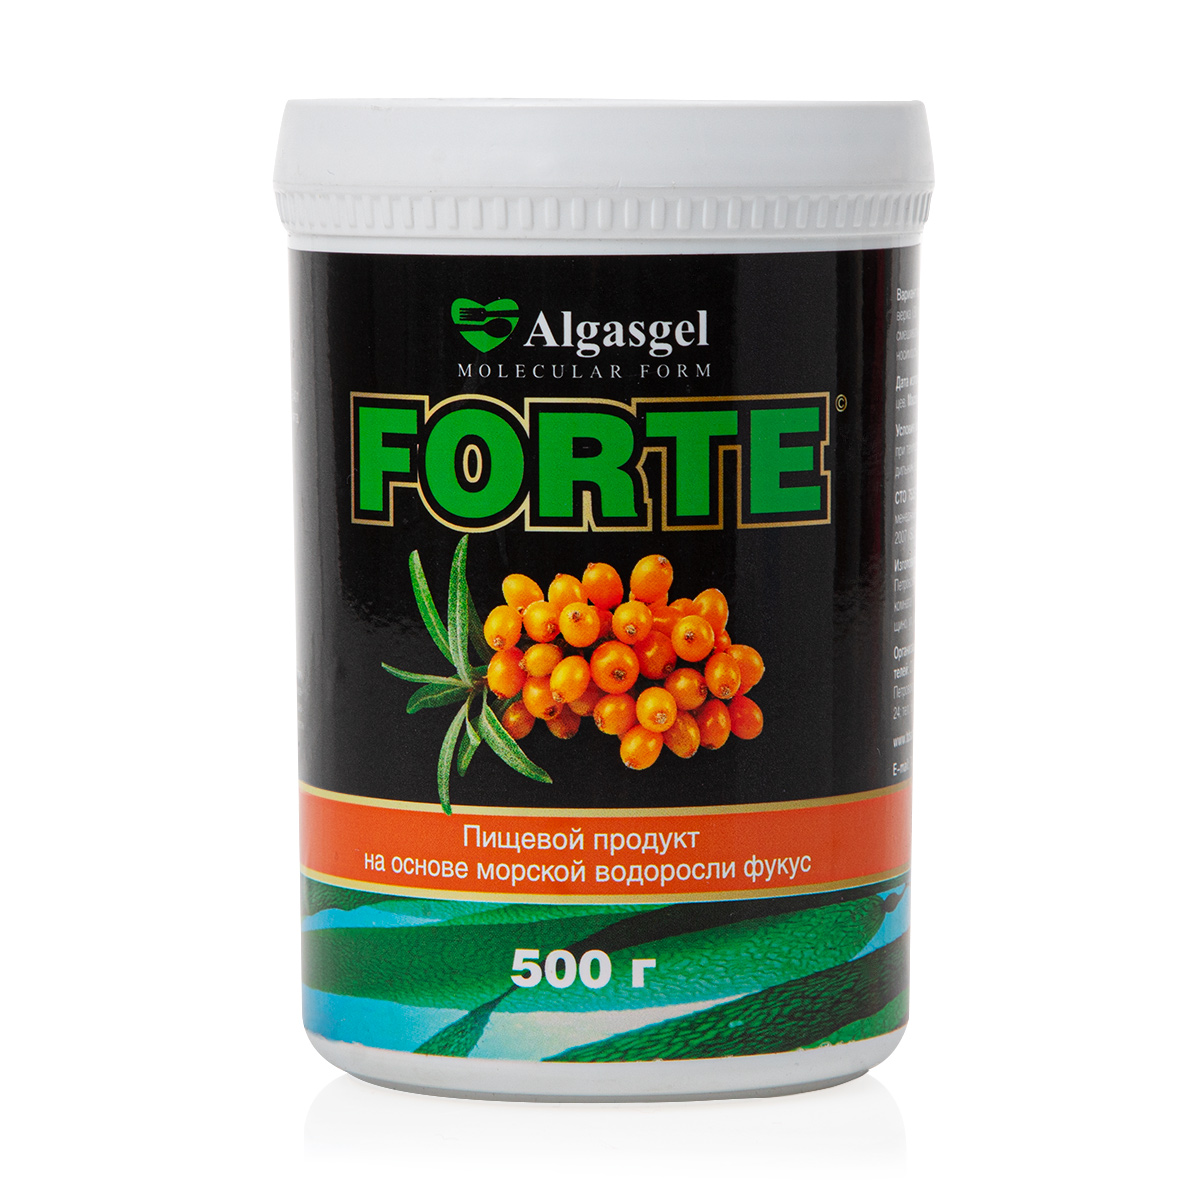 Пищевой продукт Algasgel Forte для снижения вечернего аппетита (500 г) algasgel vita для восстановления организма 2 уп по 500 г 1 в подарок